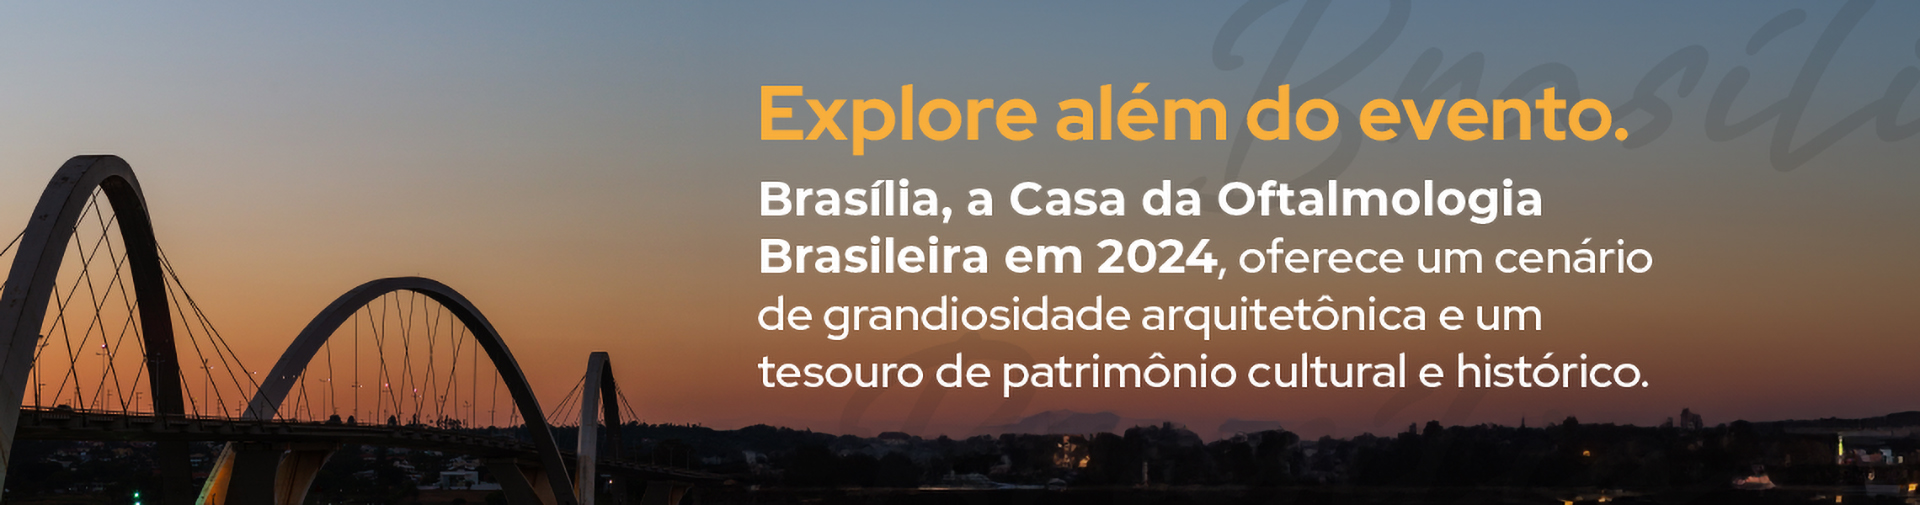 Banner - Brasilia